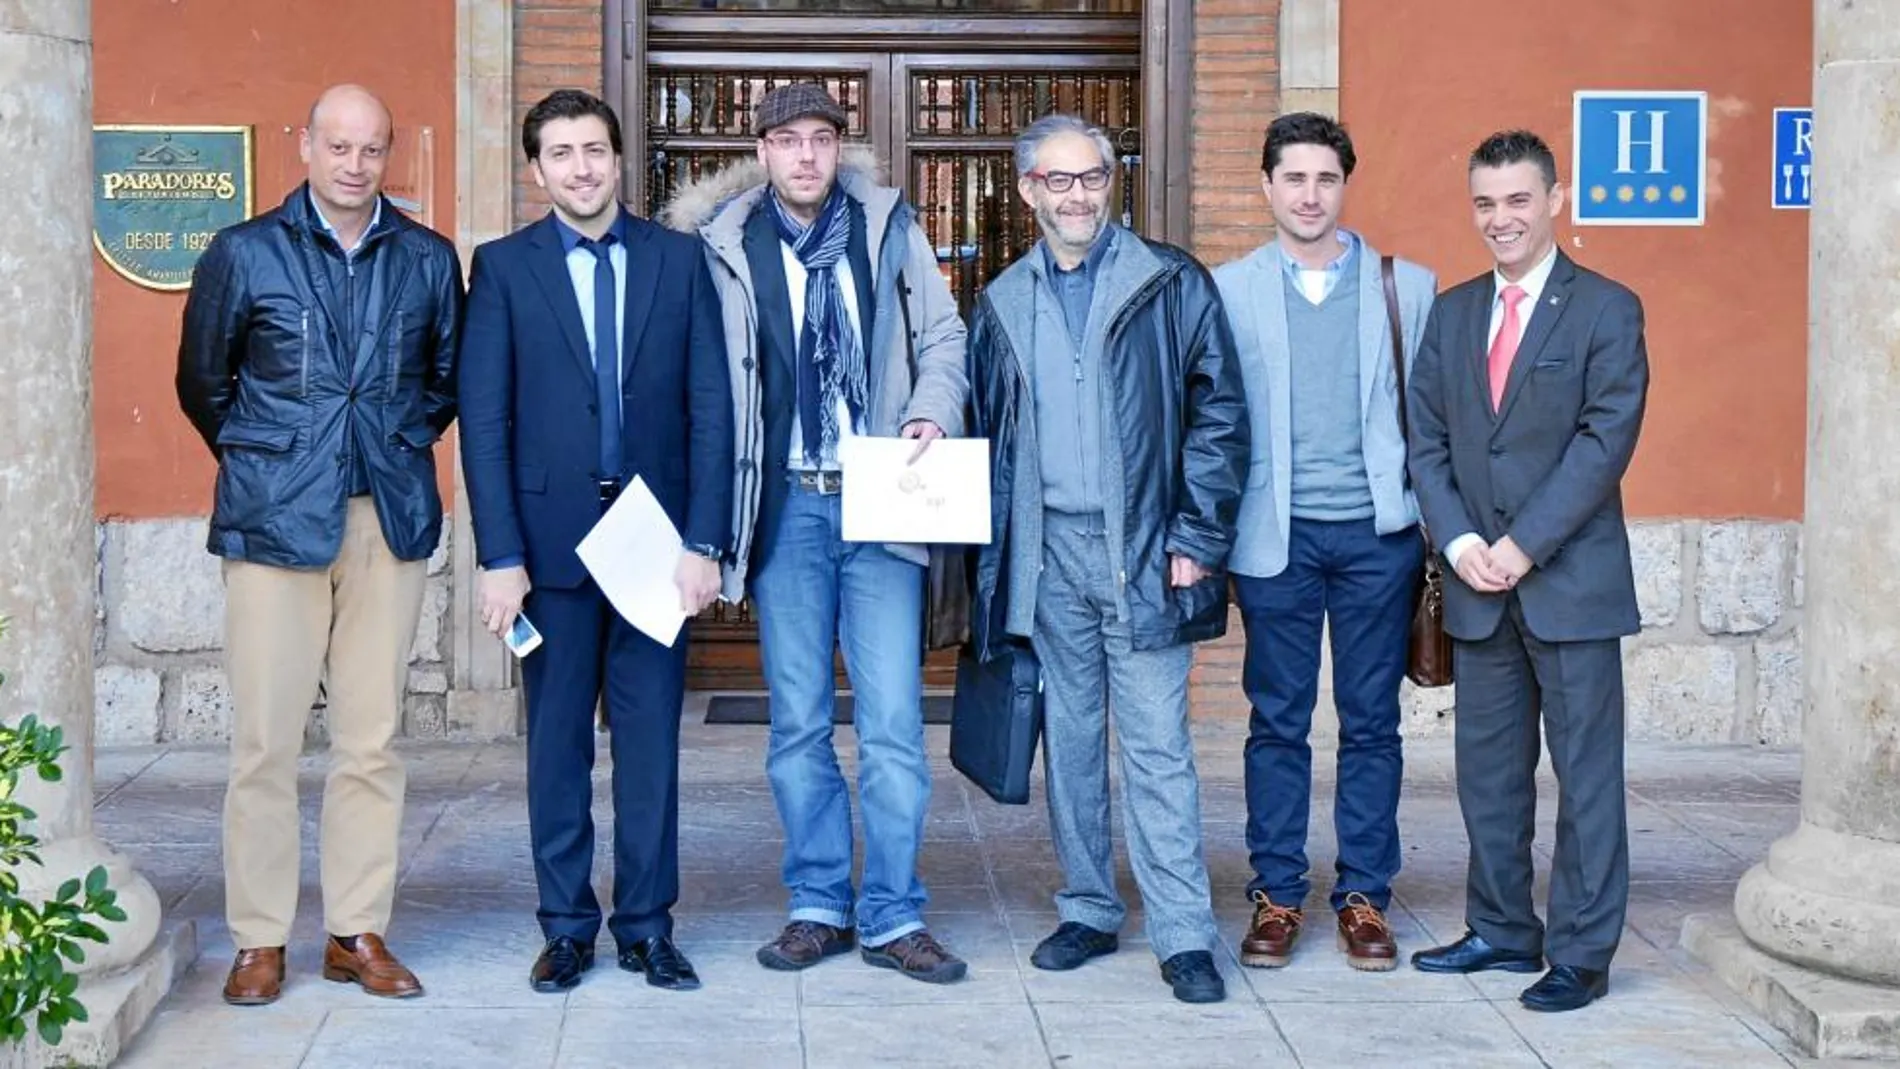 Alberto Expectación, Diego Fernández, Alfonso F. Reca, Carlos de Miguel, Luis Romera y Javier López Alarma